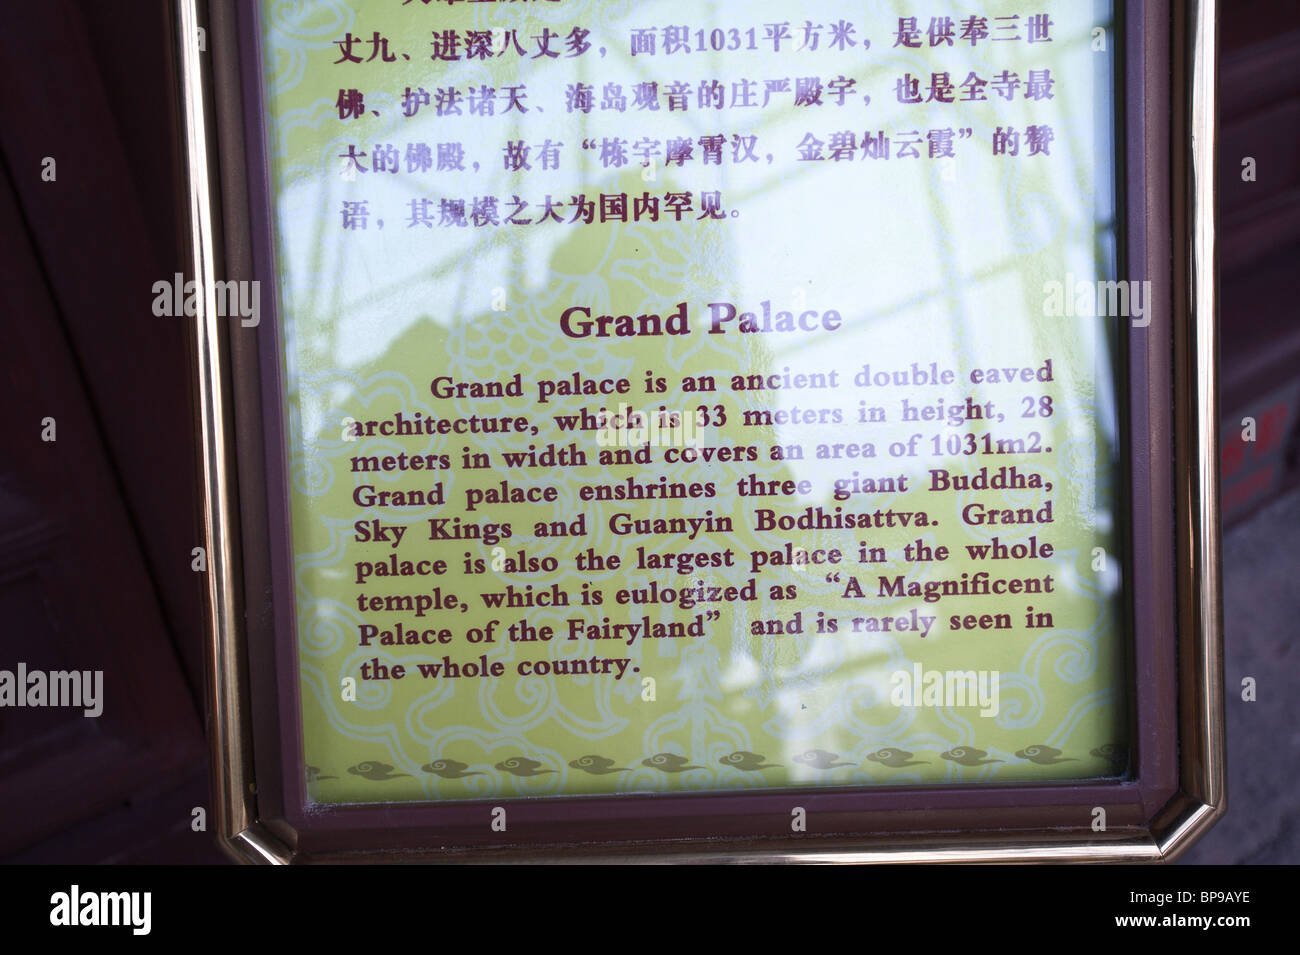 China, Changzhou. Tianning Temple Grand Palace. Stock Photo